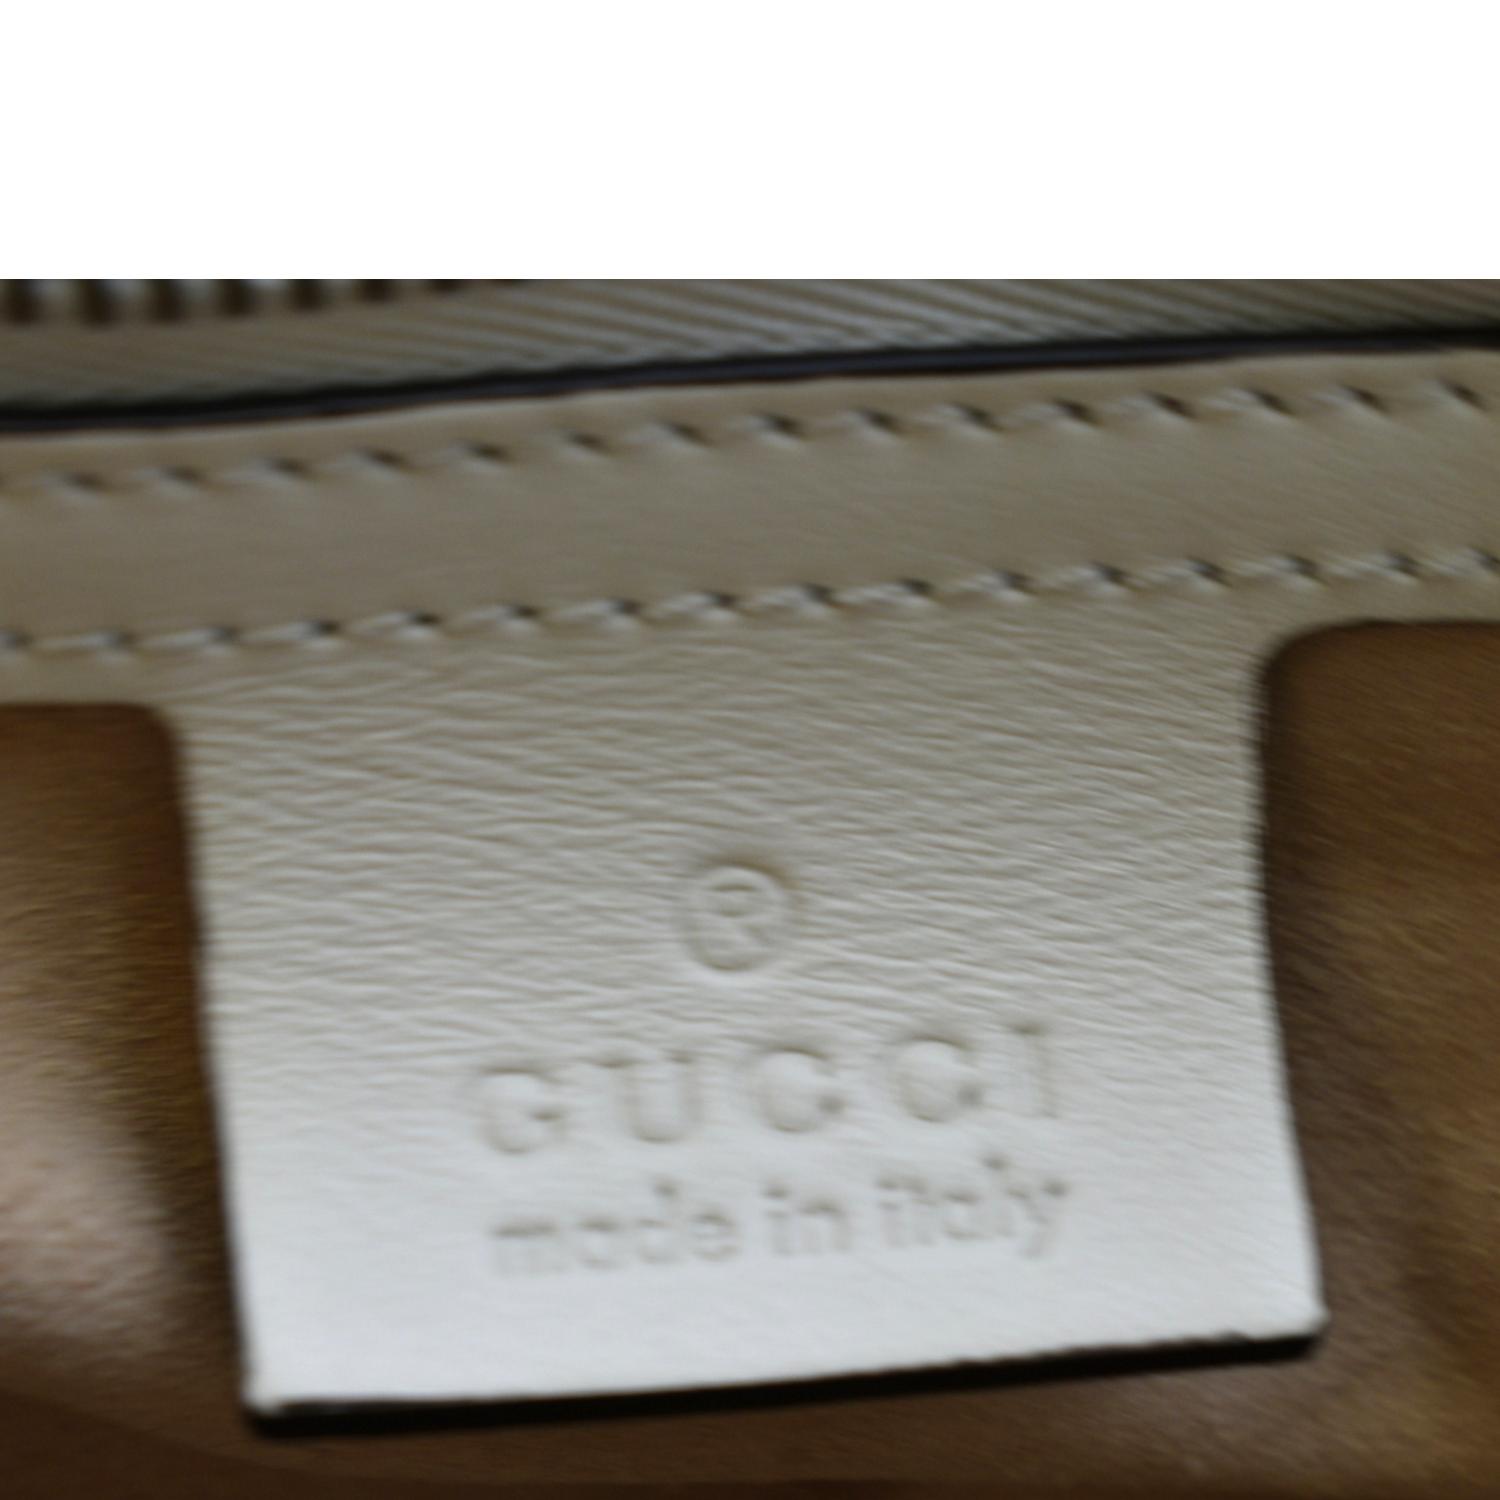 Gucci Gg Marmont Large Matelassã© Shoulder Bag